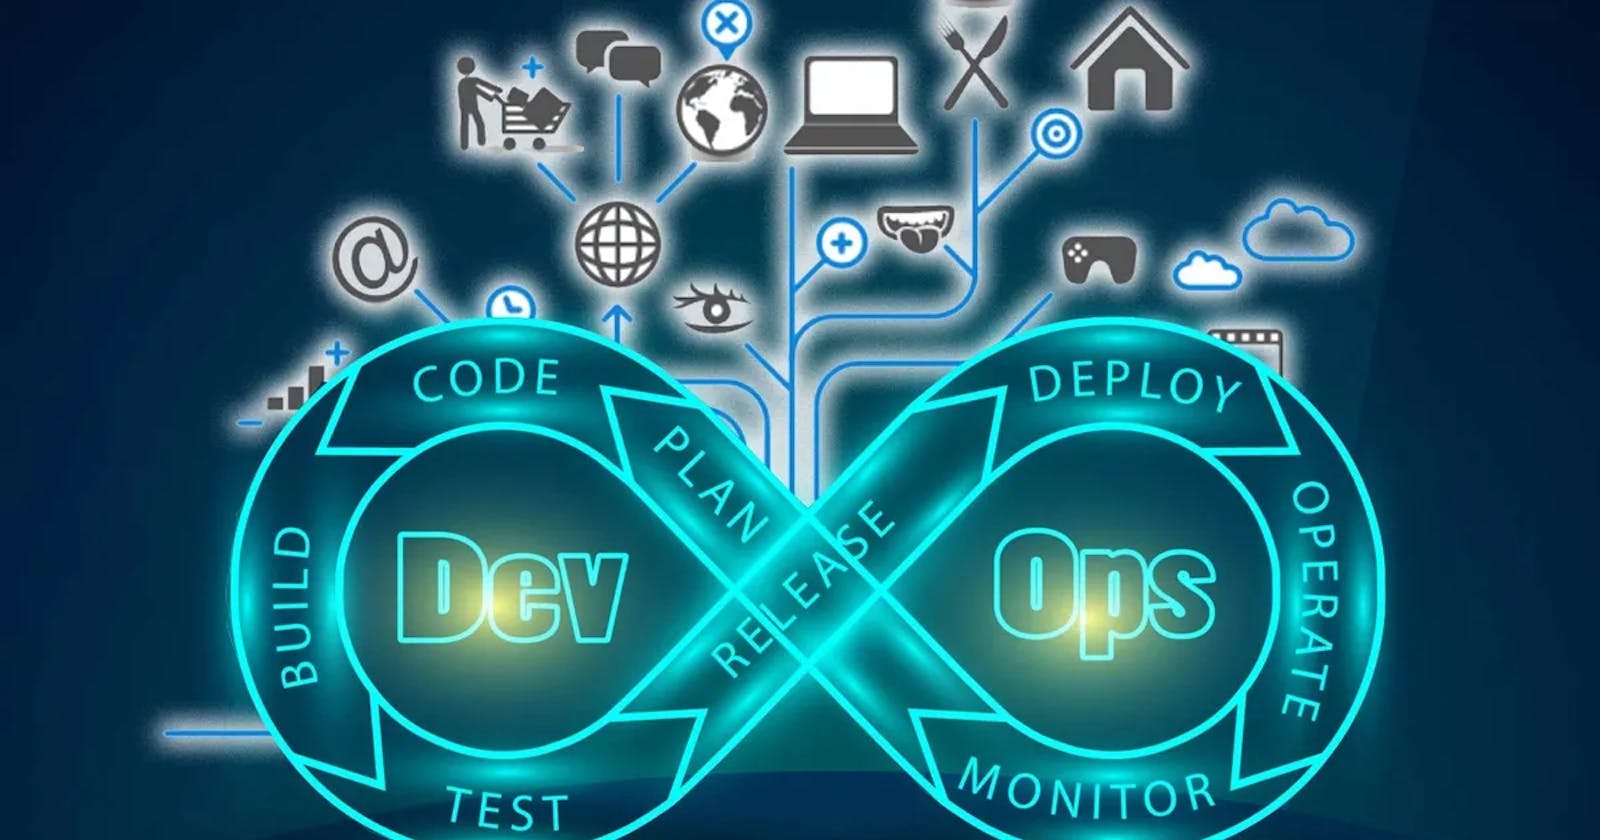 DevOps and its SDLC Model